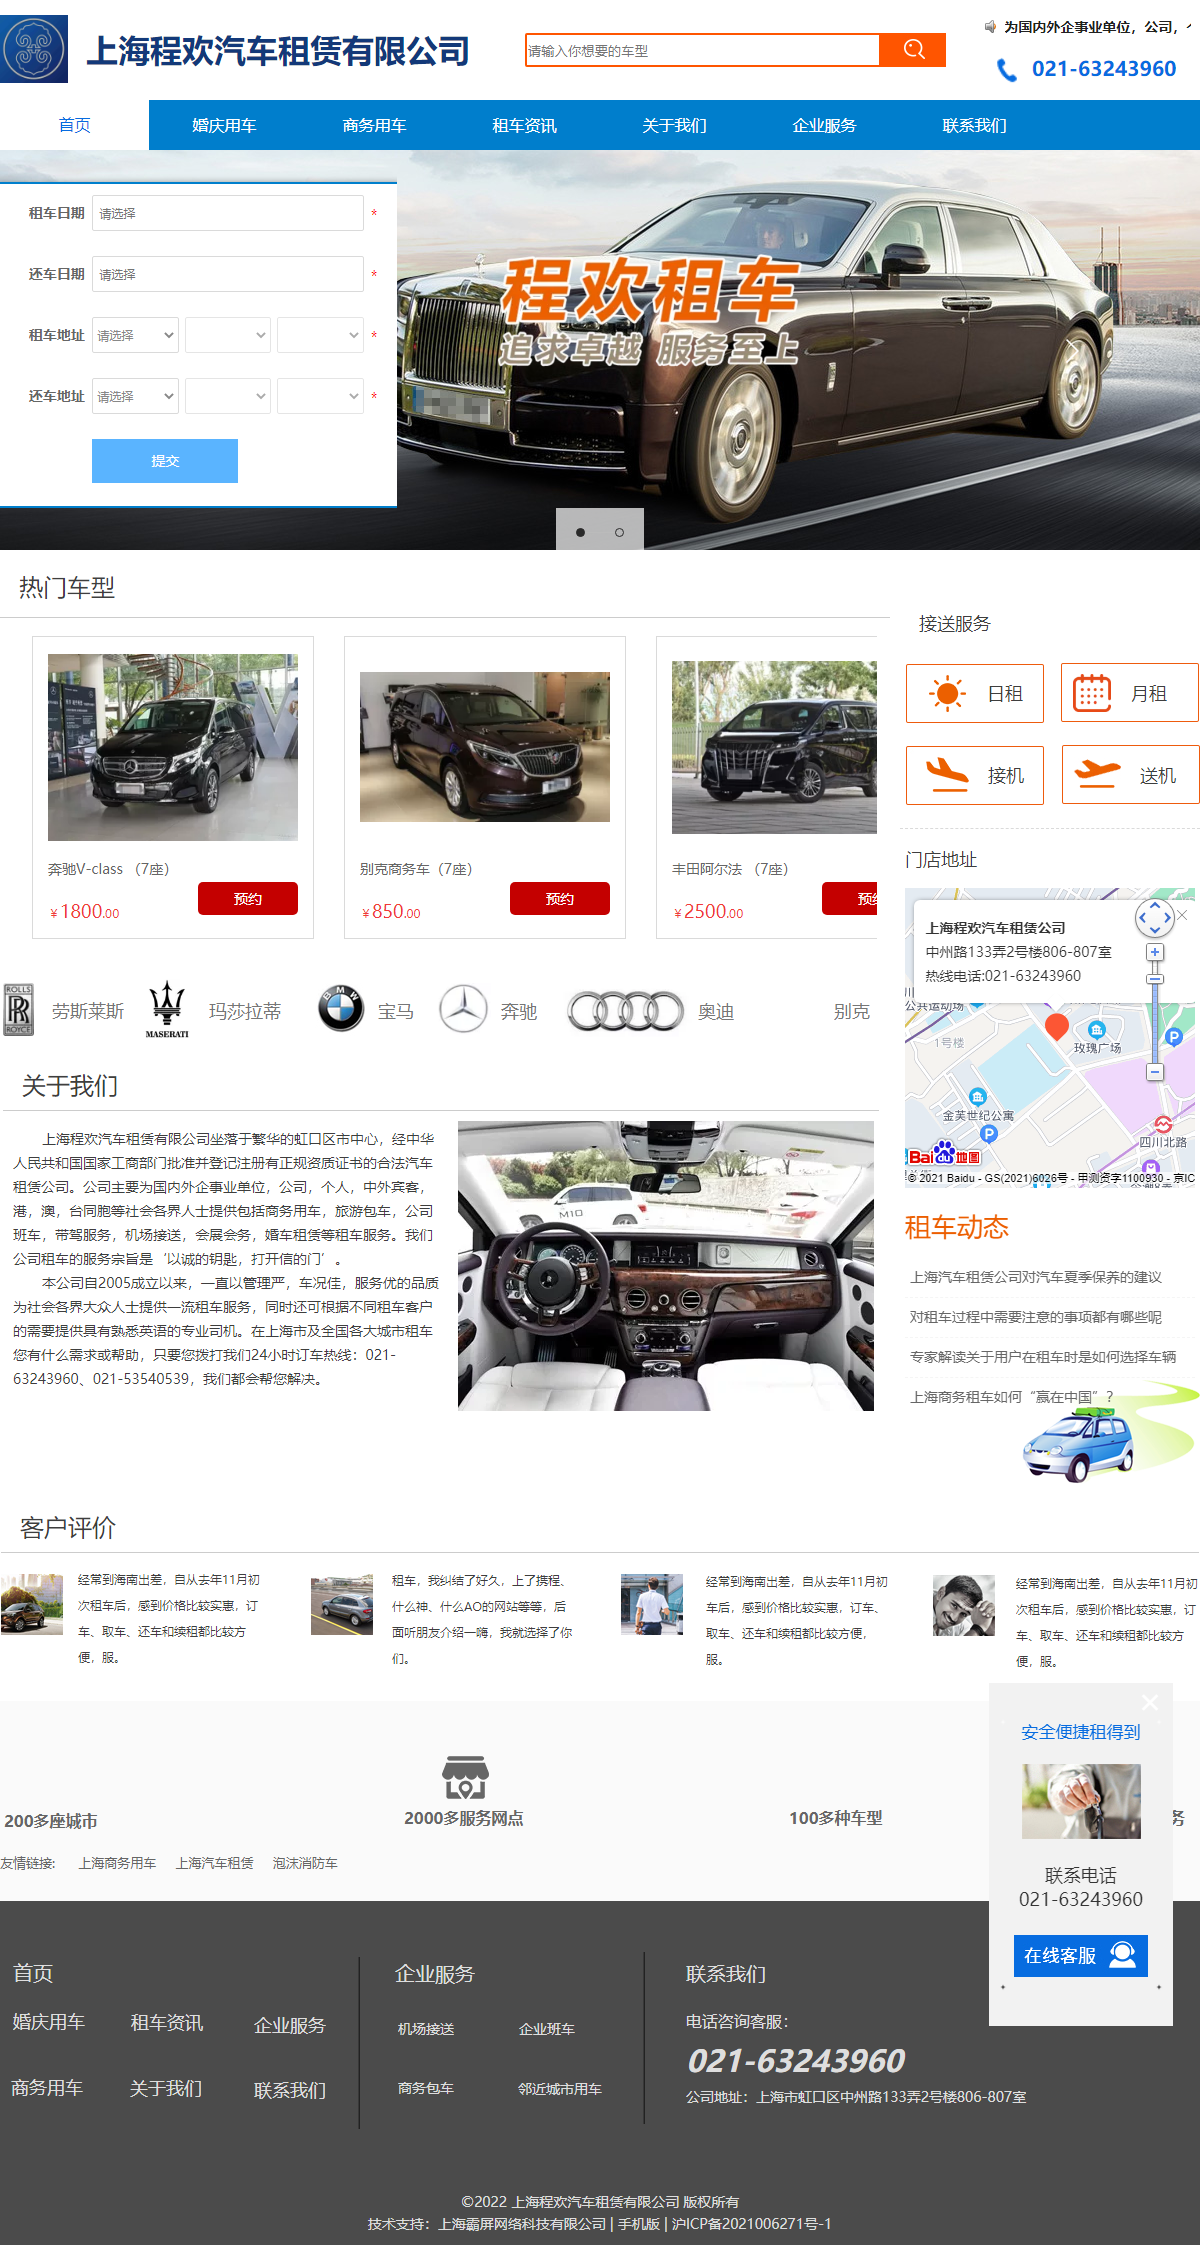 上海程欢汽车租赁有限公司网站案例